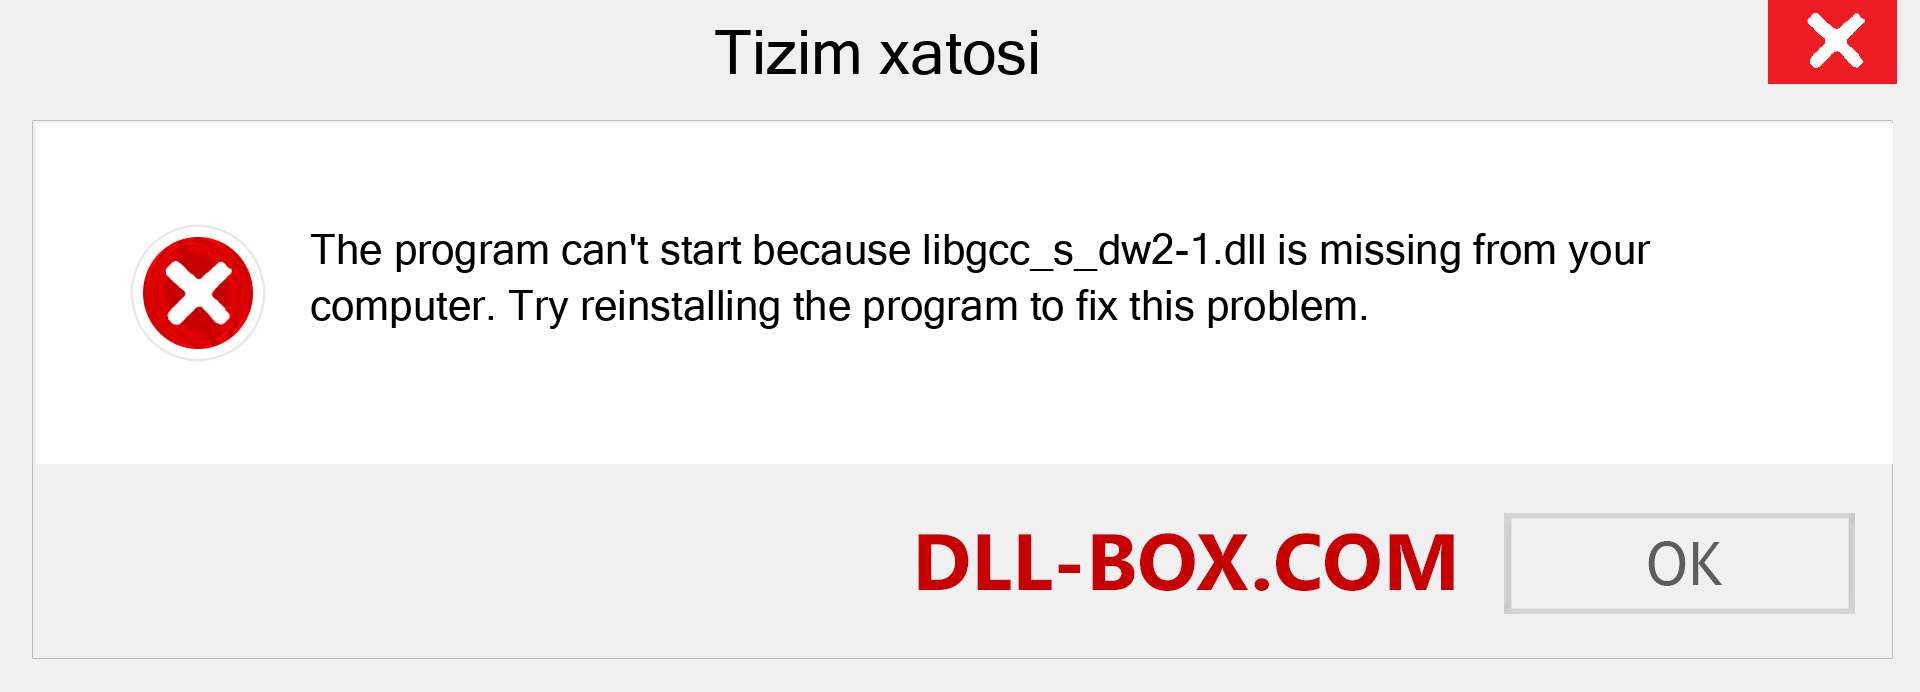 libgcc_s_dw2-1.dll fayli yo'qolganmi?. Windows 7, 8, 10 uchun yuklab olish - Windowsda libgcc_s_dw2-1 dll etishmayotgan xatoni tuzating, rasmlar, rasmlar